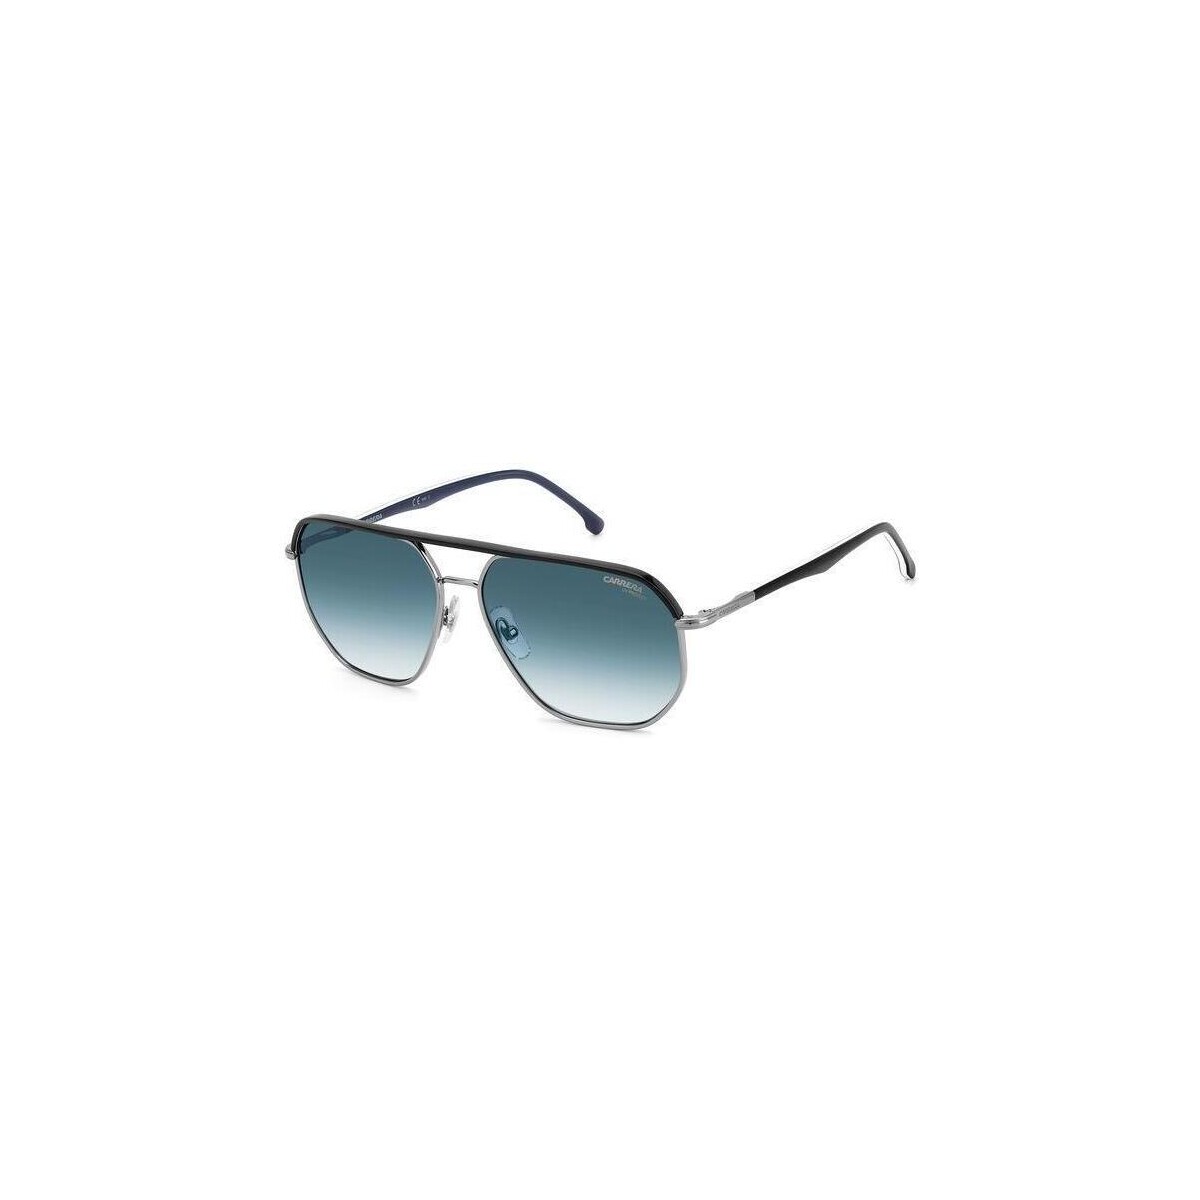 Orologi & Gioielli Uomo Occhiali da sole Carrera 304/S Occhiali da sole, Grigio/Blu/Blu, 59 mm Altri